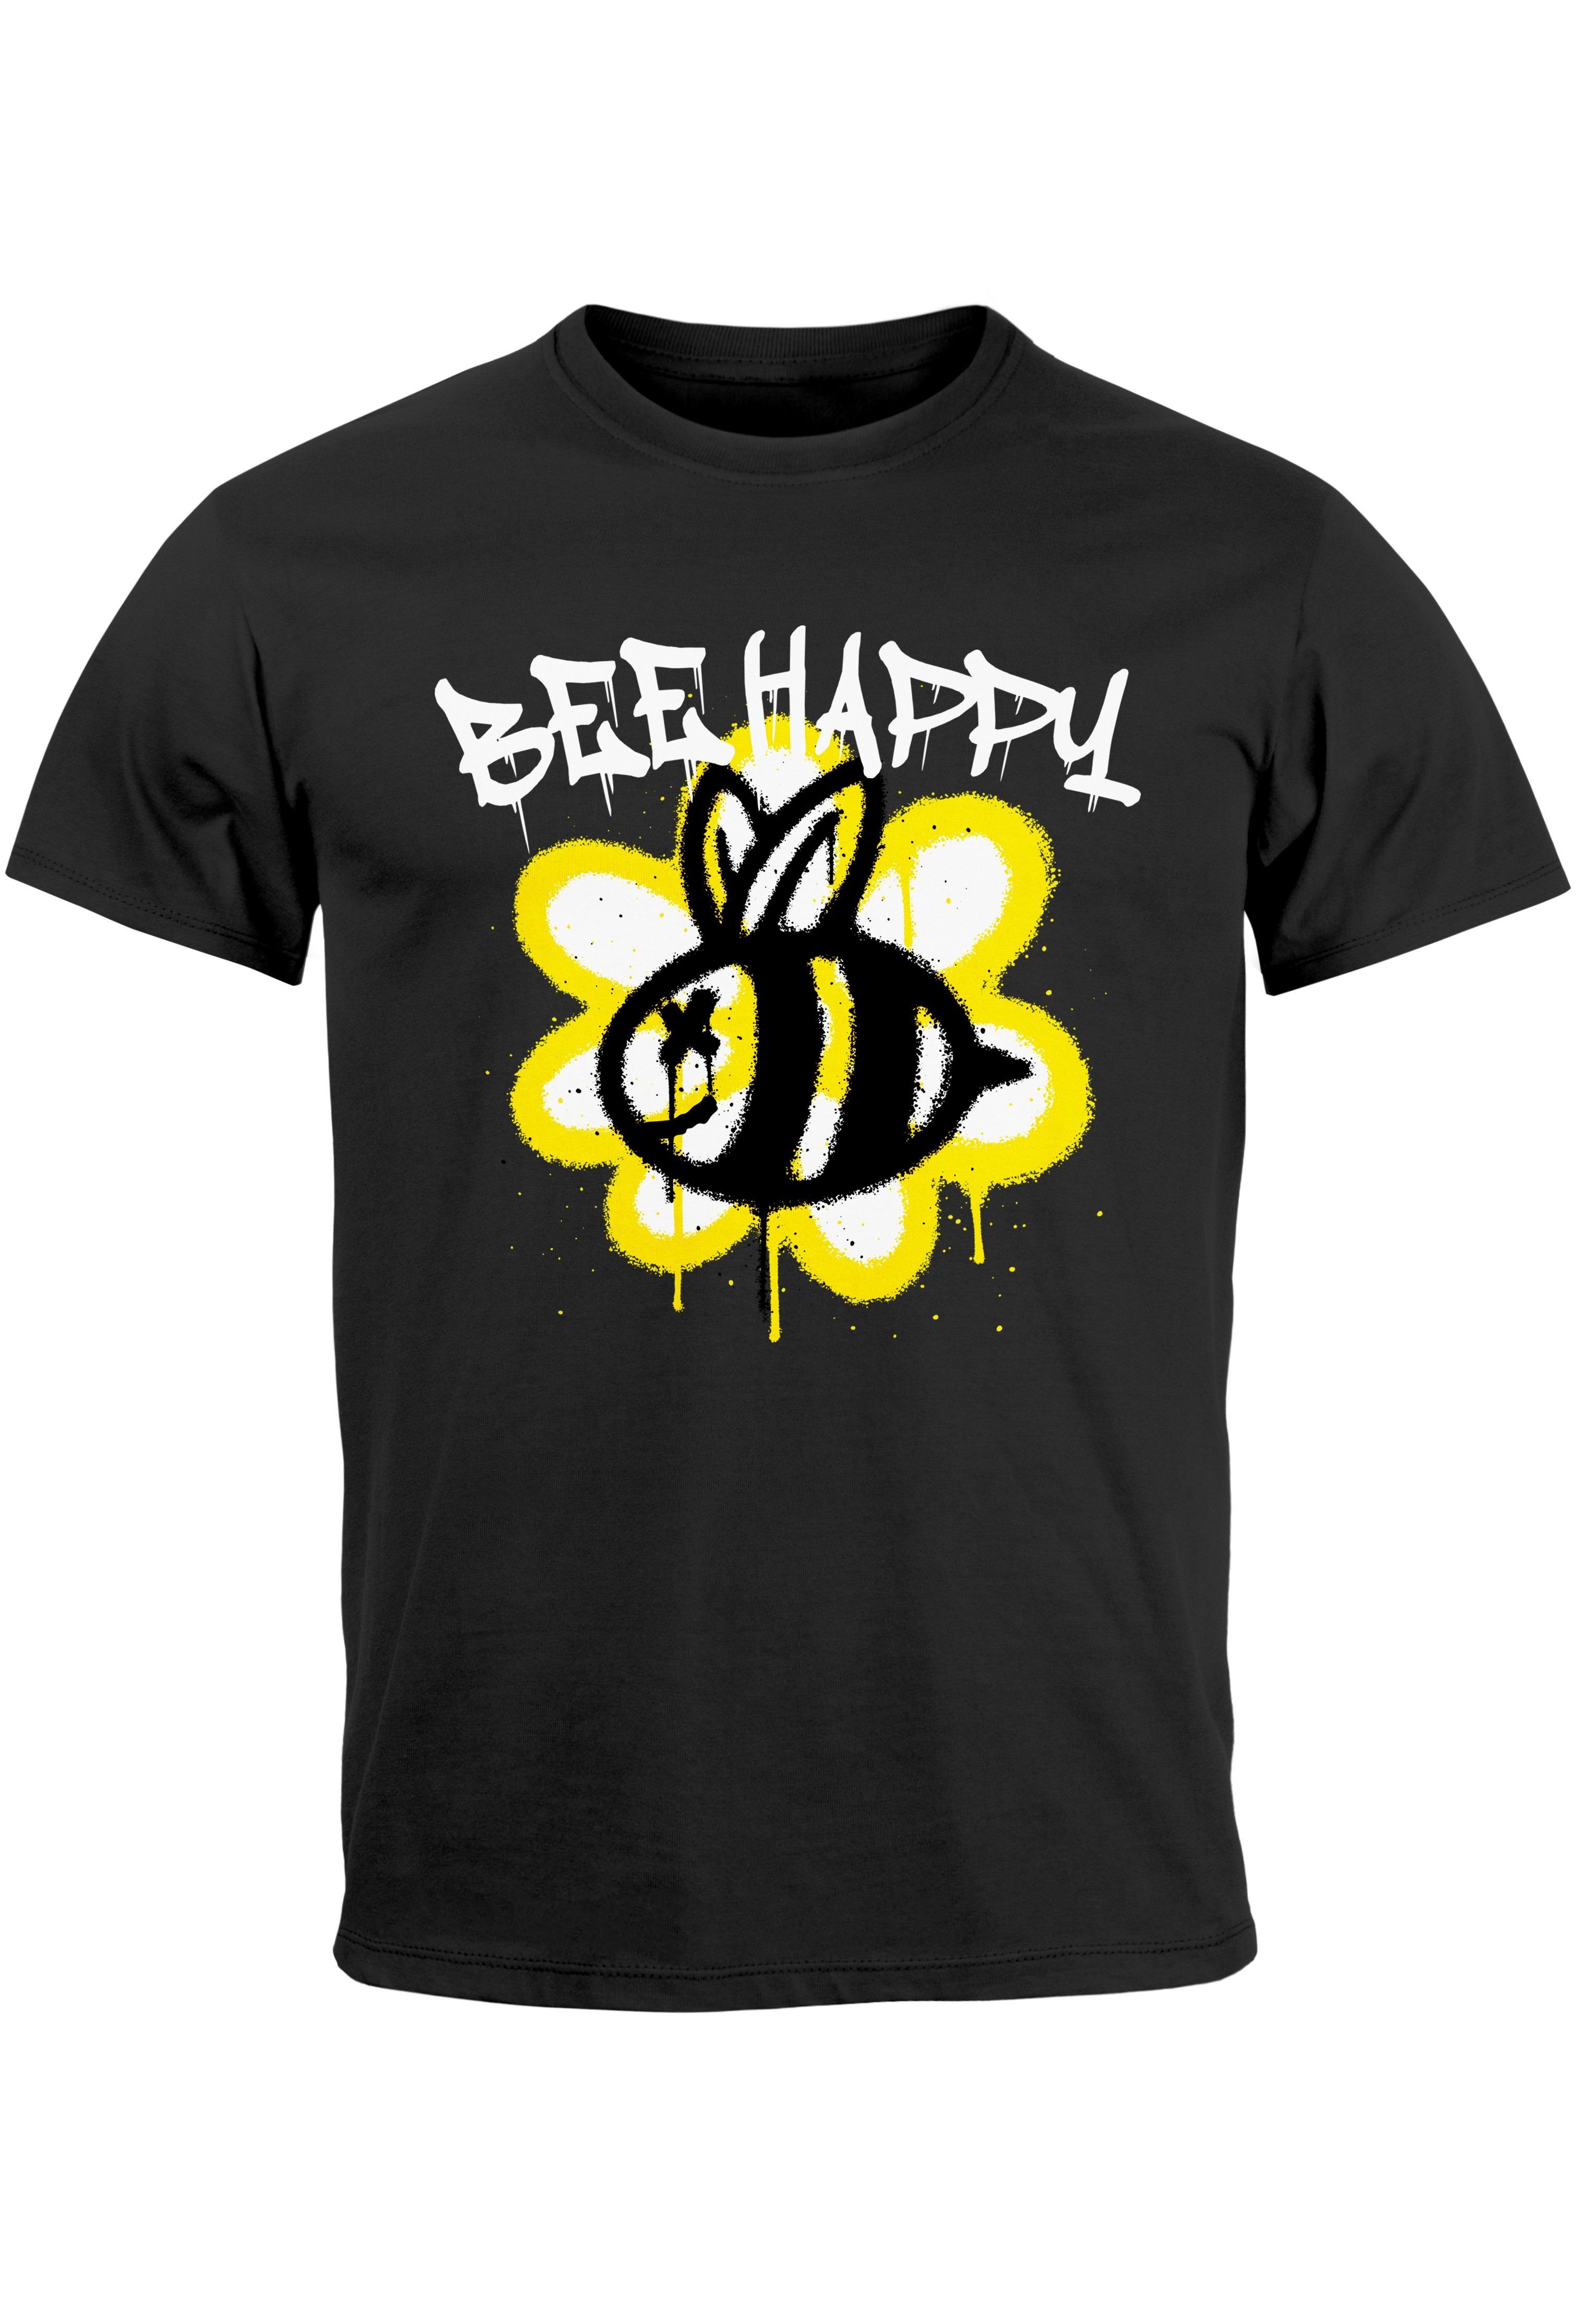 Neverless Print-Shirt Herren T-Shirt Aufdruck Bee Happy Biene Blume Graffiti SchriftzugFashi mit Print schwarz